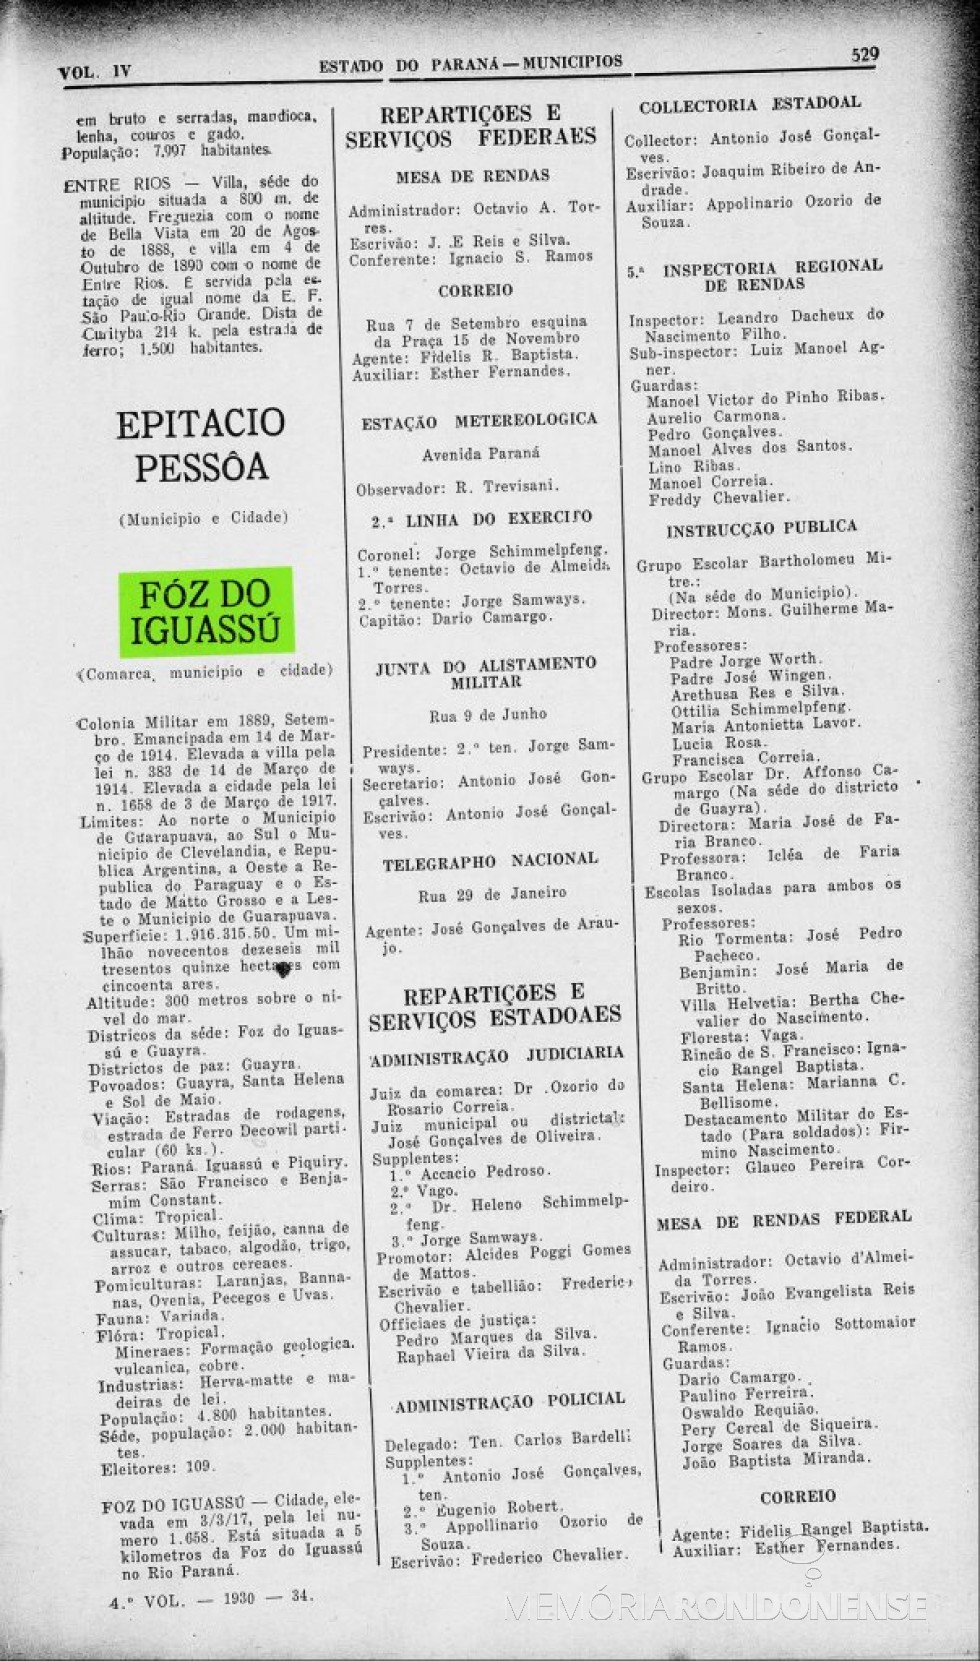 || Página 530 do Almanak Laemmert  com a 1ª parte do Censo 1930 de Foz do Iguaçu.
Imagem: Arquivo Biblioteca Nacional - FOTO 2 - 